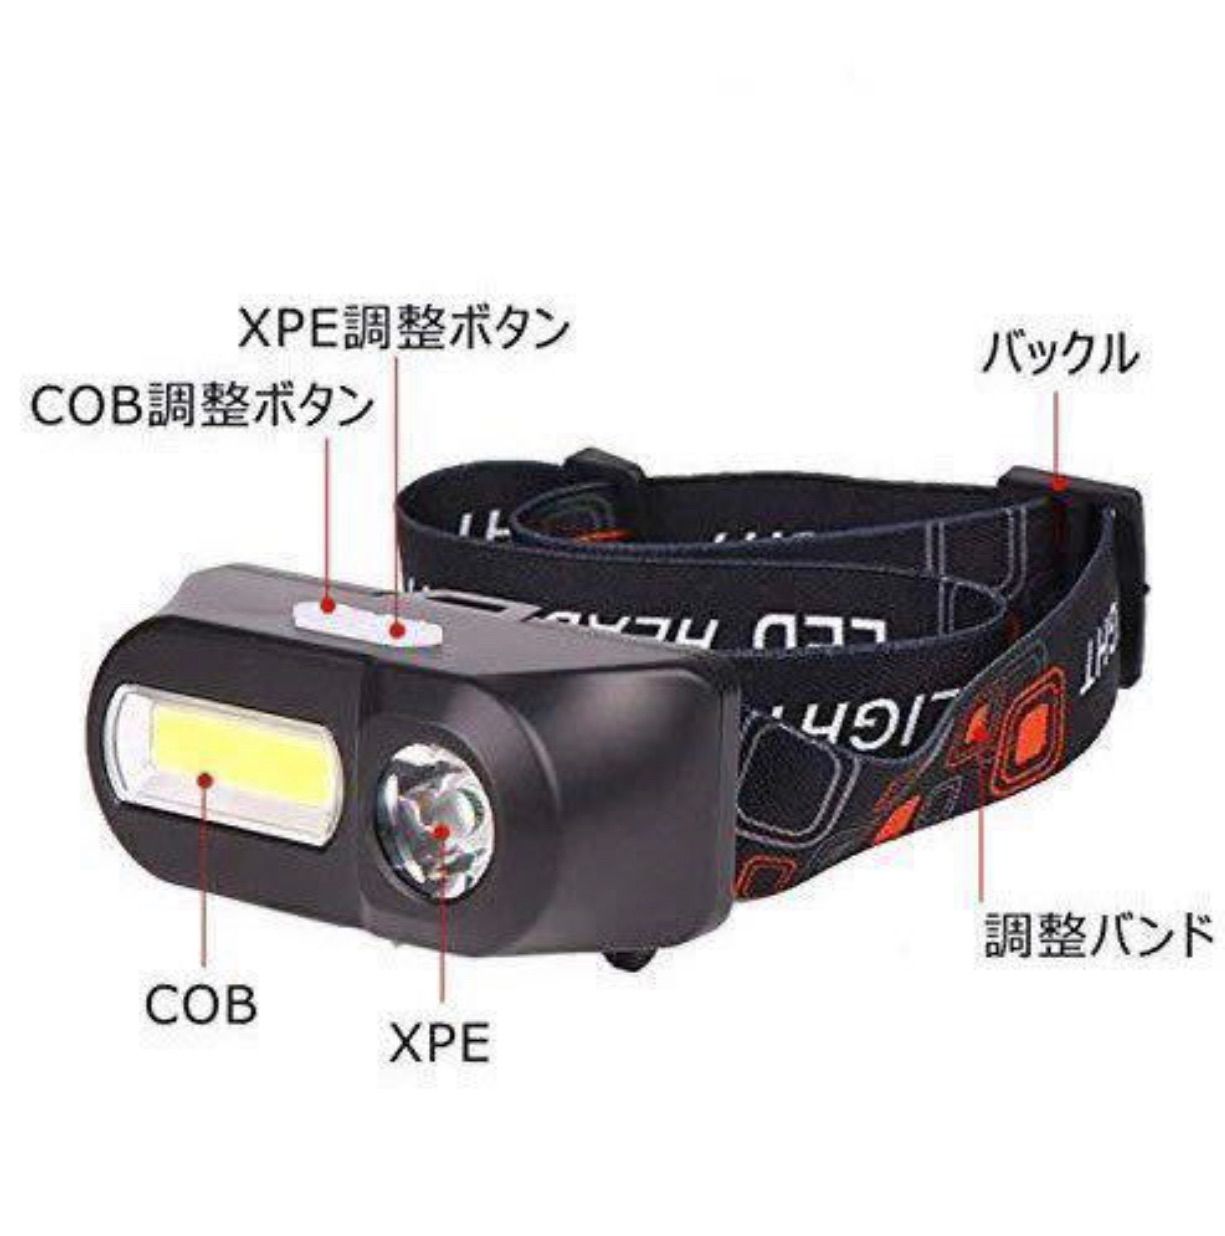 着後レビューで 大容量バッテリー USB充電式 ヘッドライト XPE COB LED